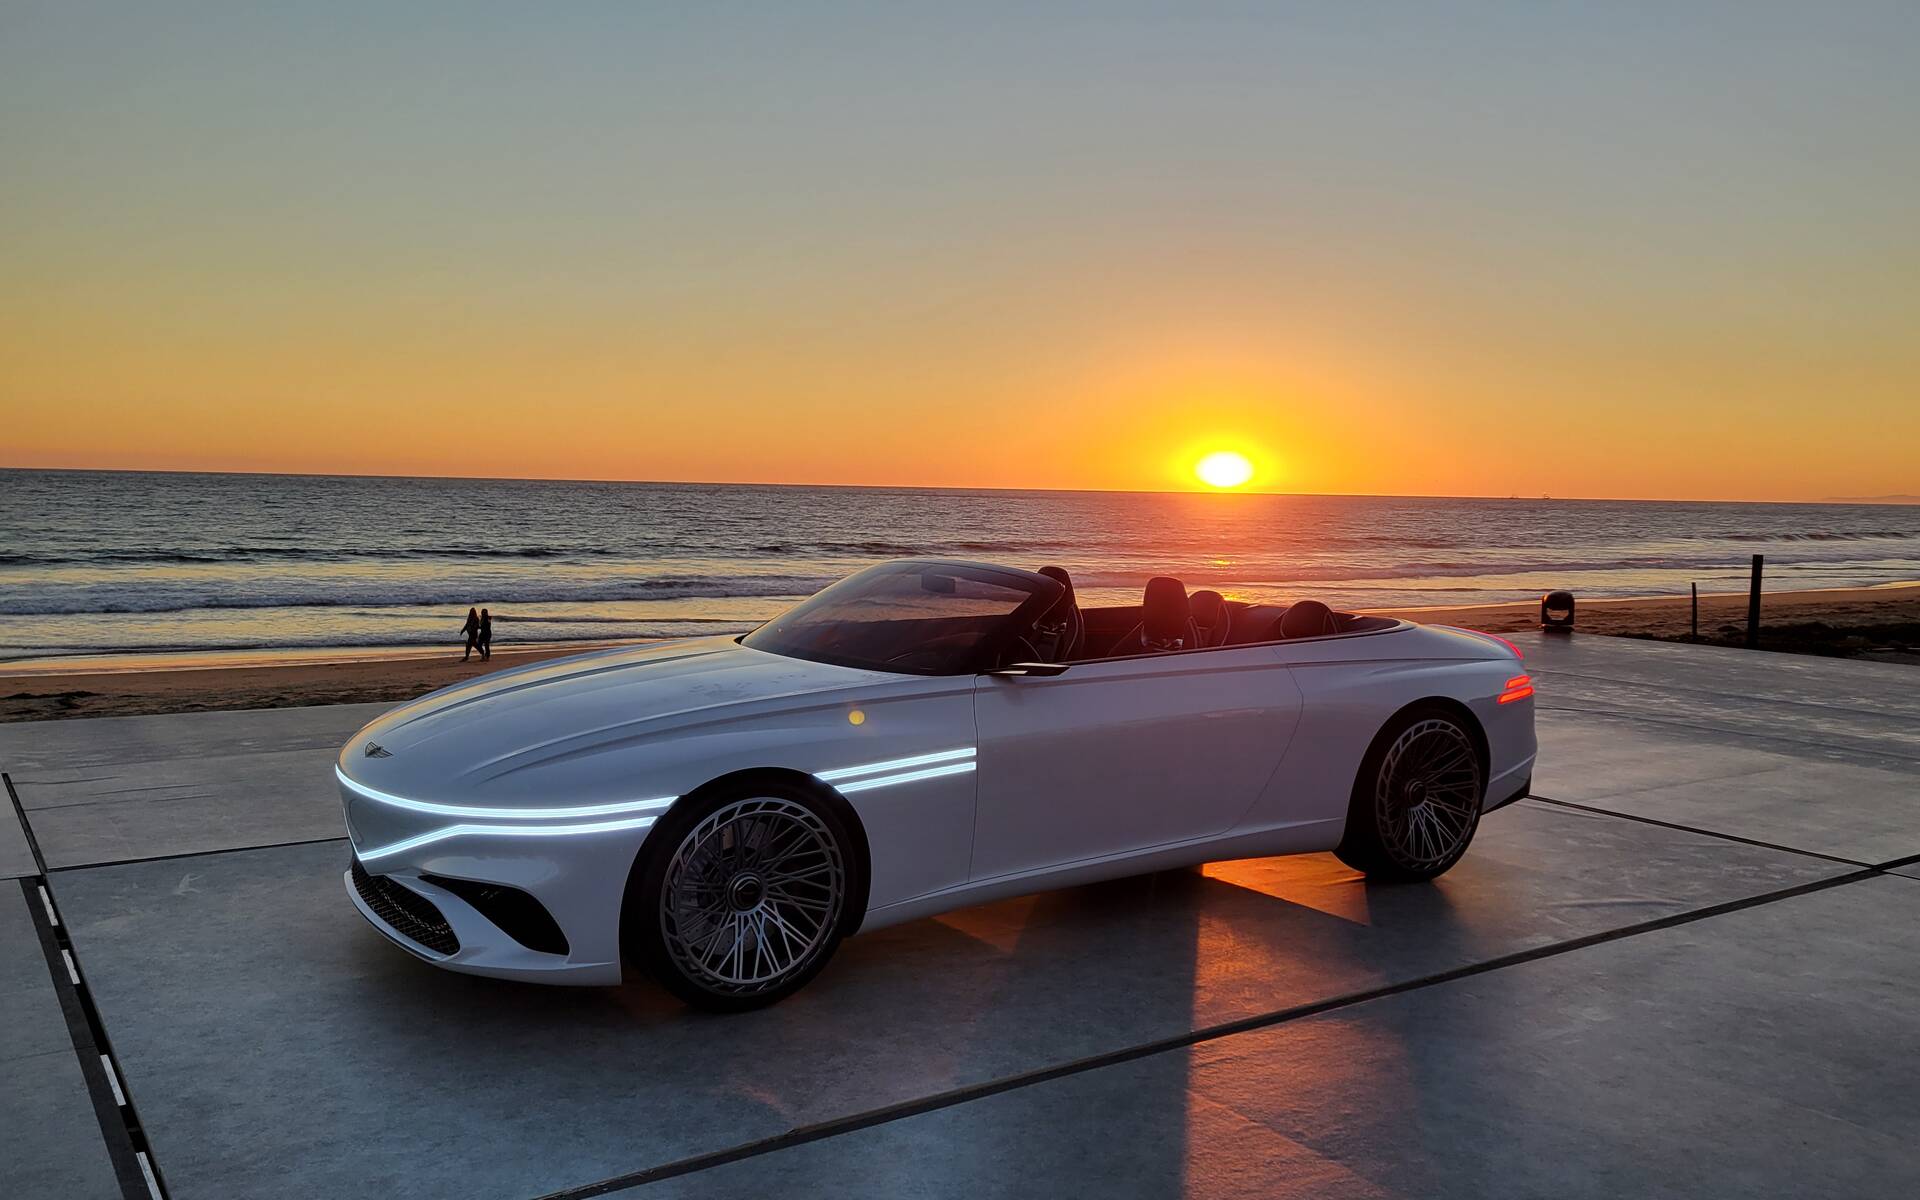 Genesis présente le Concept X Convertible à Los Angeles 550342-genesis-presents-x-convertible-concept-in-los-angeles